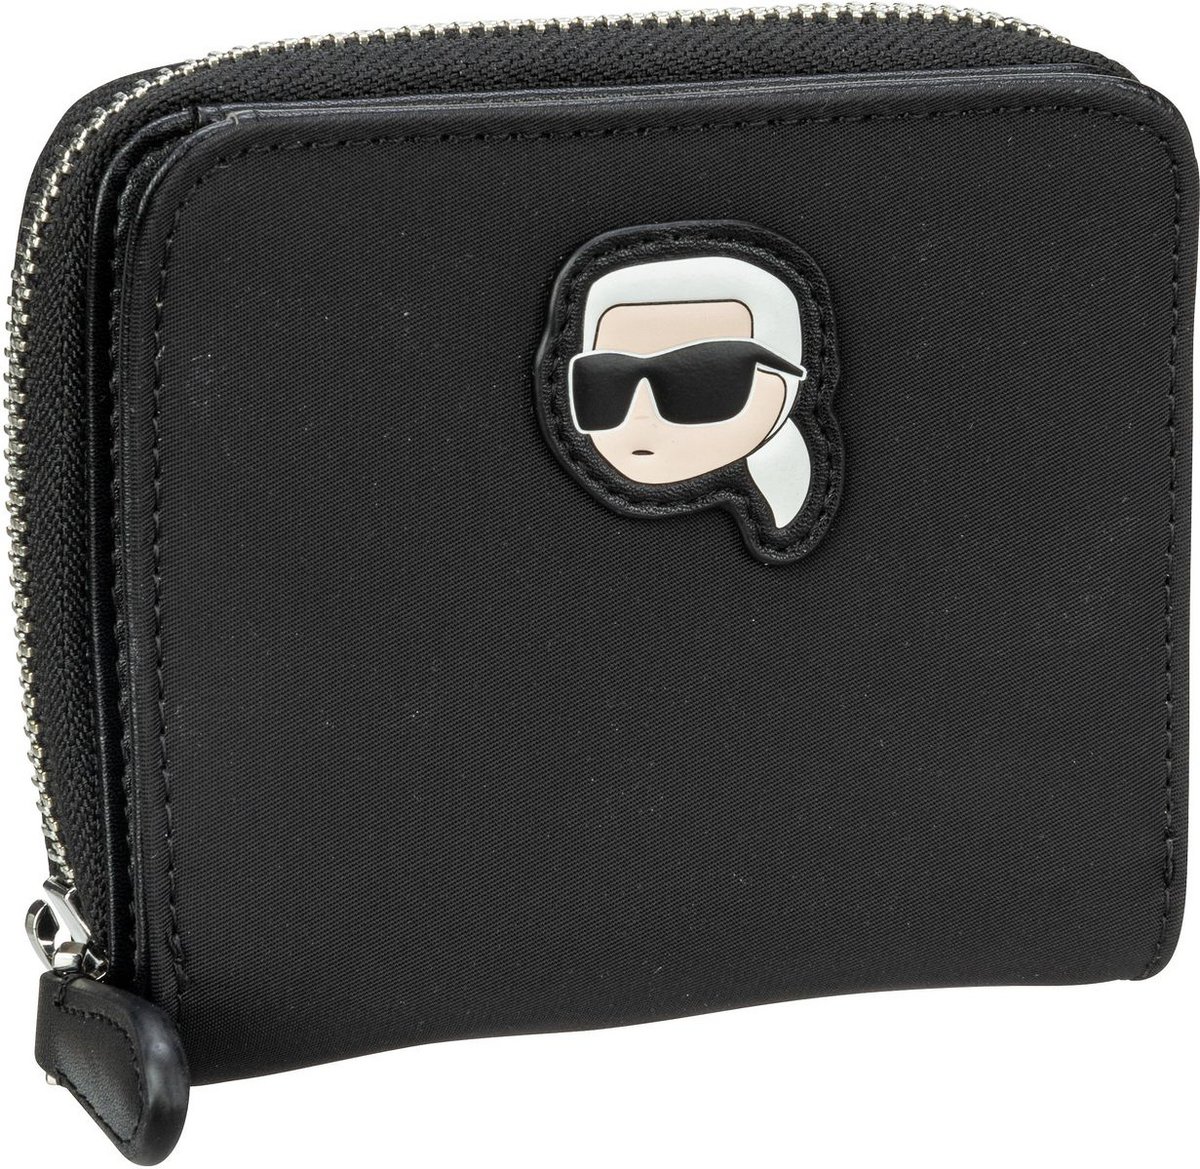 Karl Lagerfeld Geldbörse K Ikonik 2.0 Small Nylon Zip Wallet Black (0.4 Liter)  - Onlineshop Taschenkaufhaus